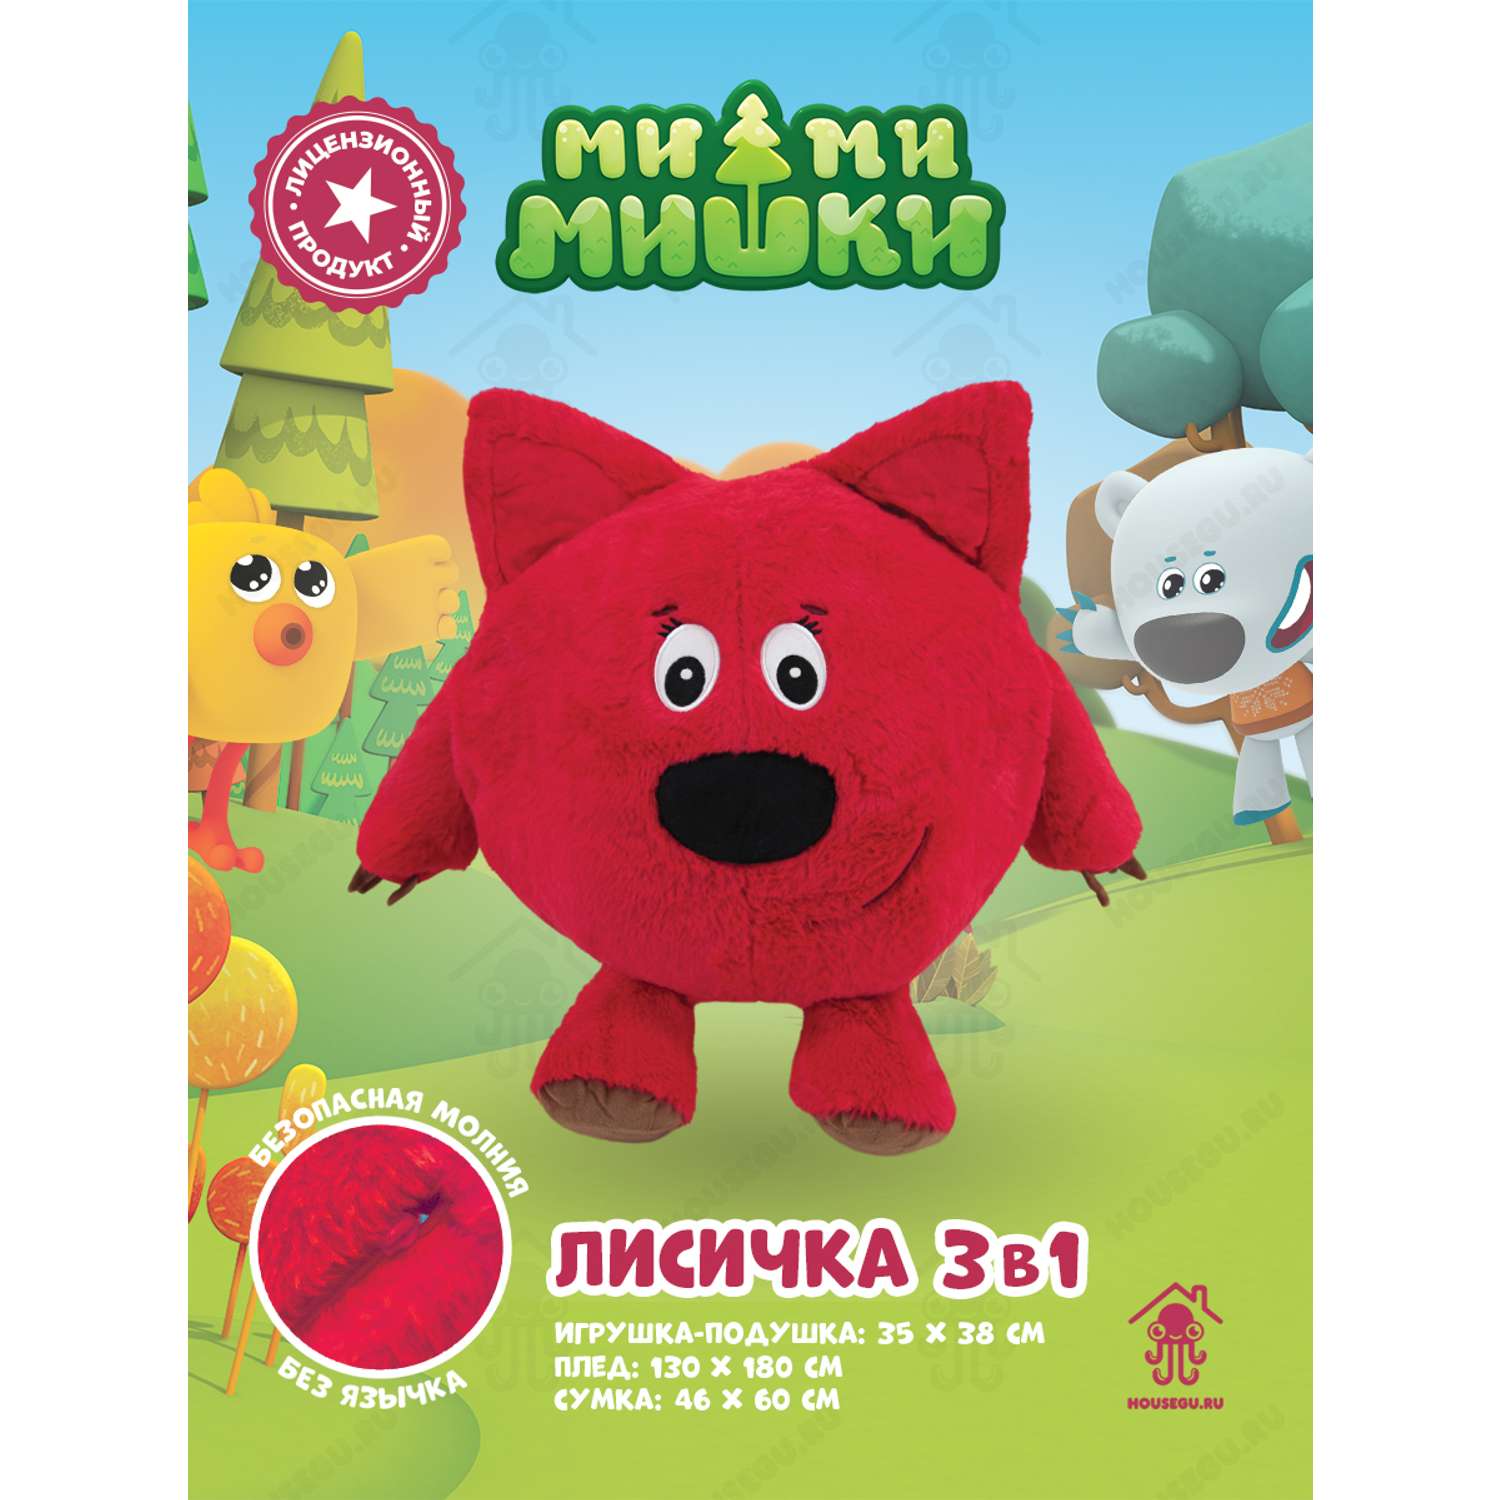 Мимимишки подушка игрушка плед HOUSEGURU красный - фото 2